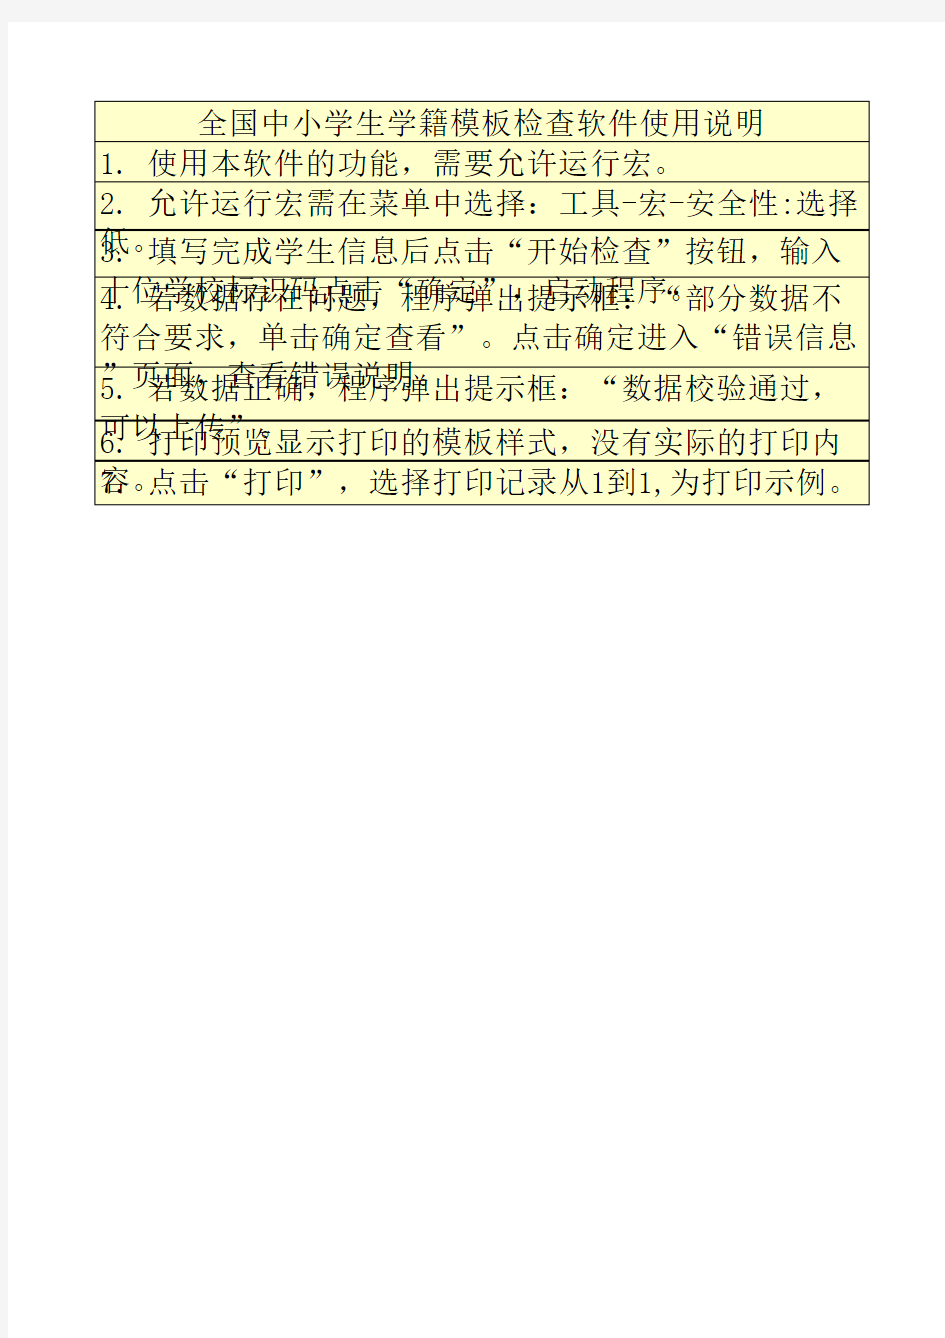 河南省中小学学籍管理系统学生基本信息模板表(带打印功能)